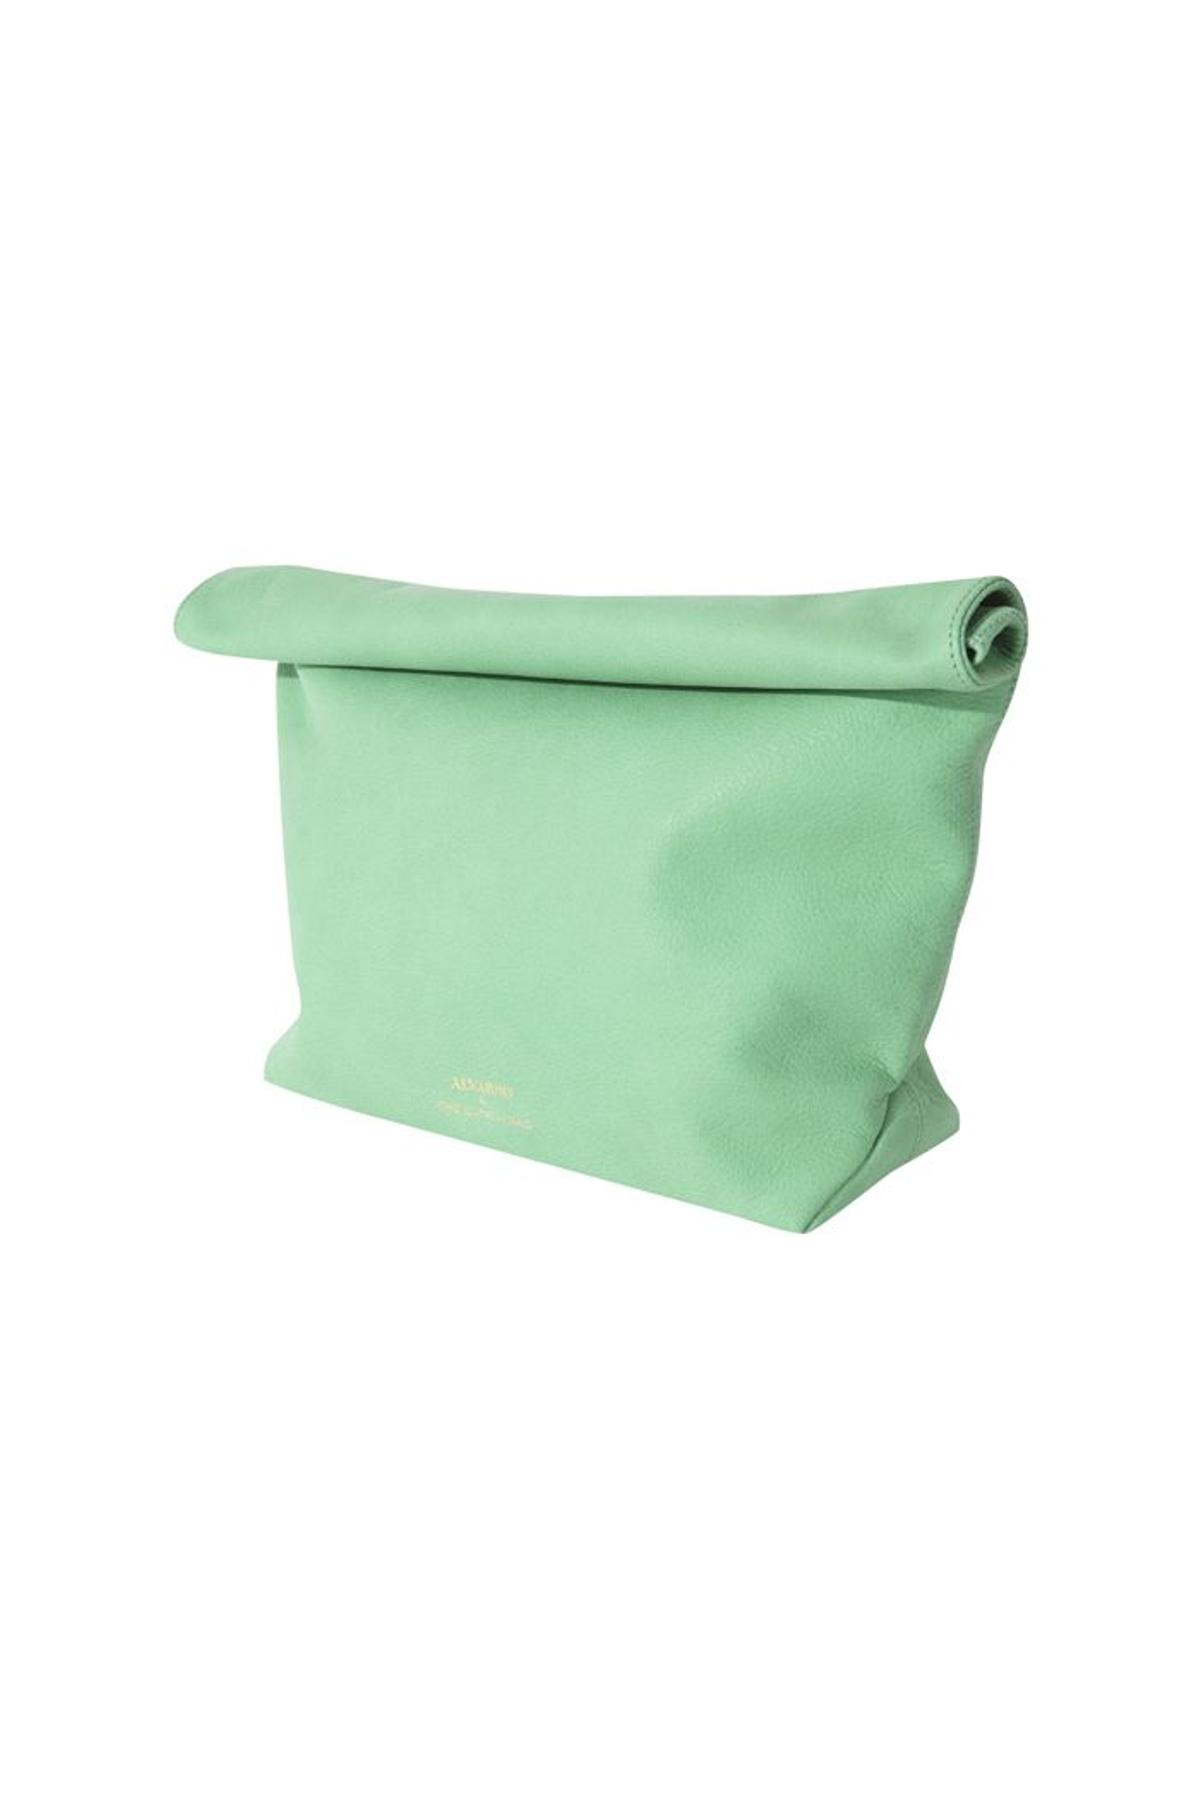 Alvarno by The Lunch Bag, en color verde agua